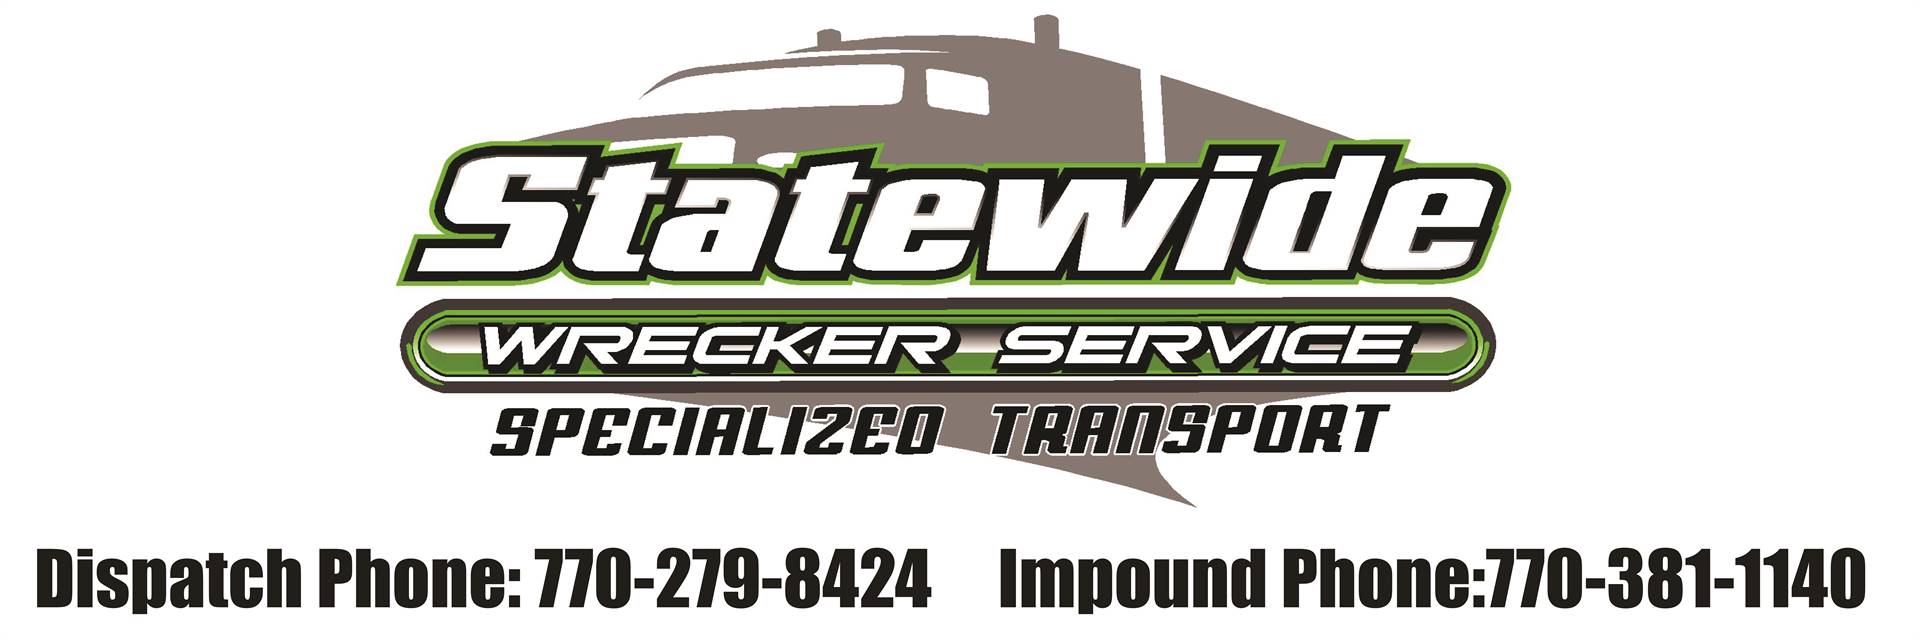 Statewide Wrecker Service